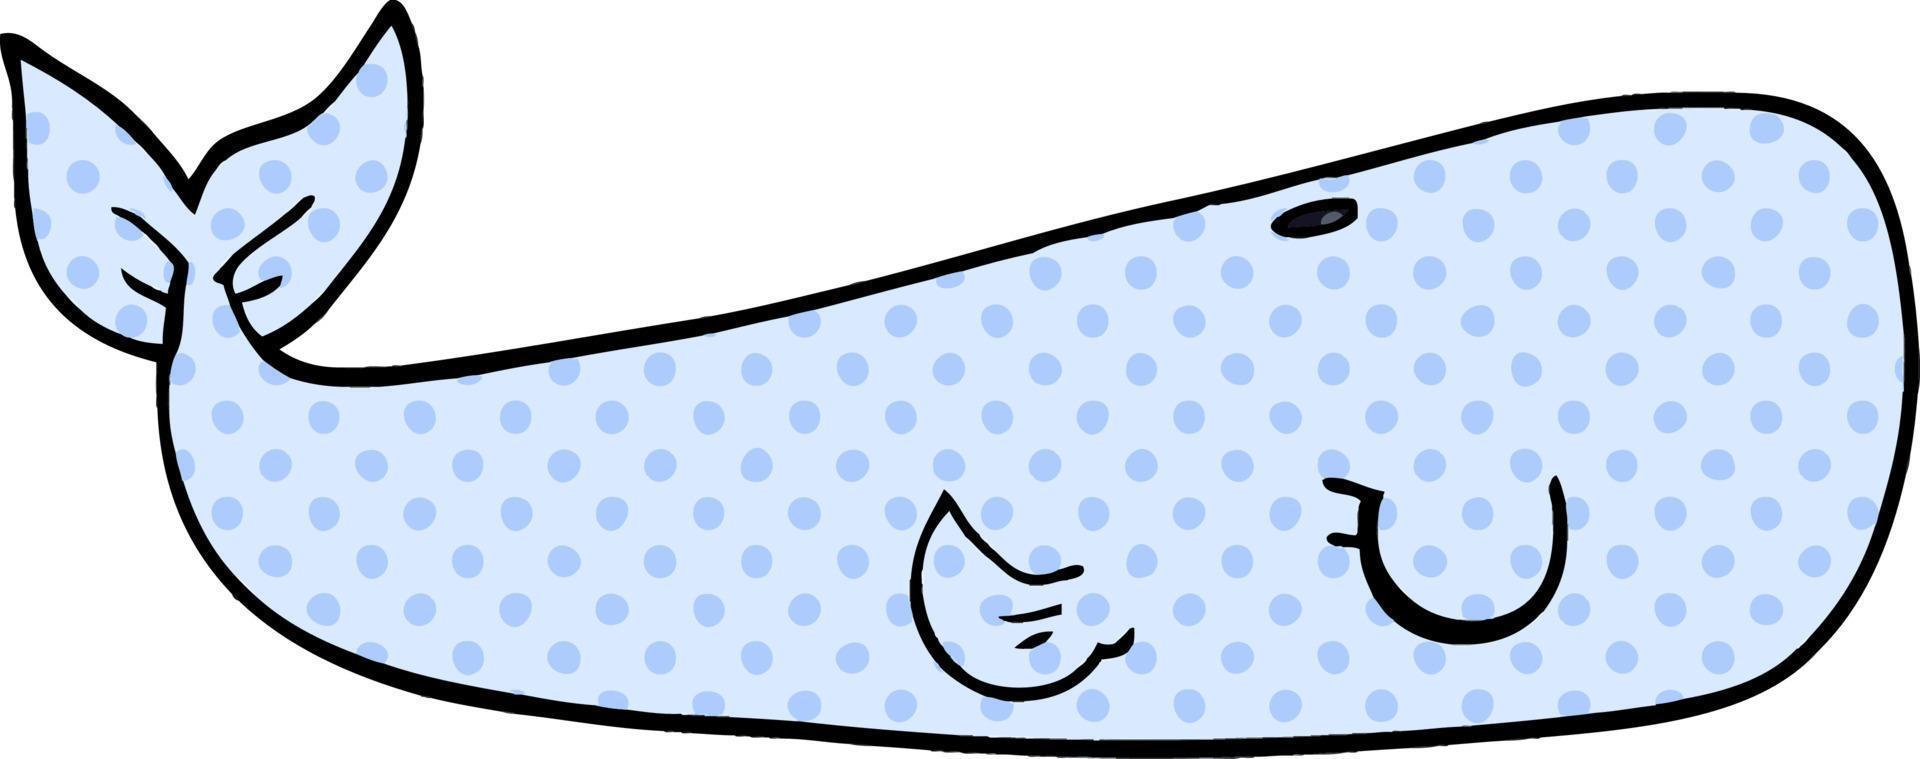 baleia do mar doodle dos desenhos animados vetor